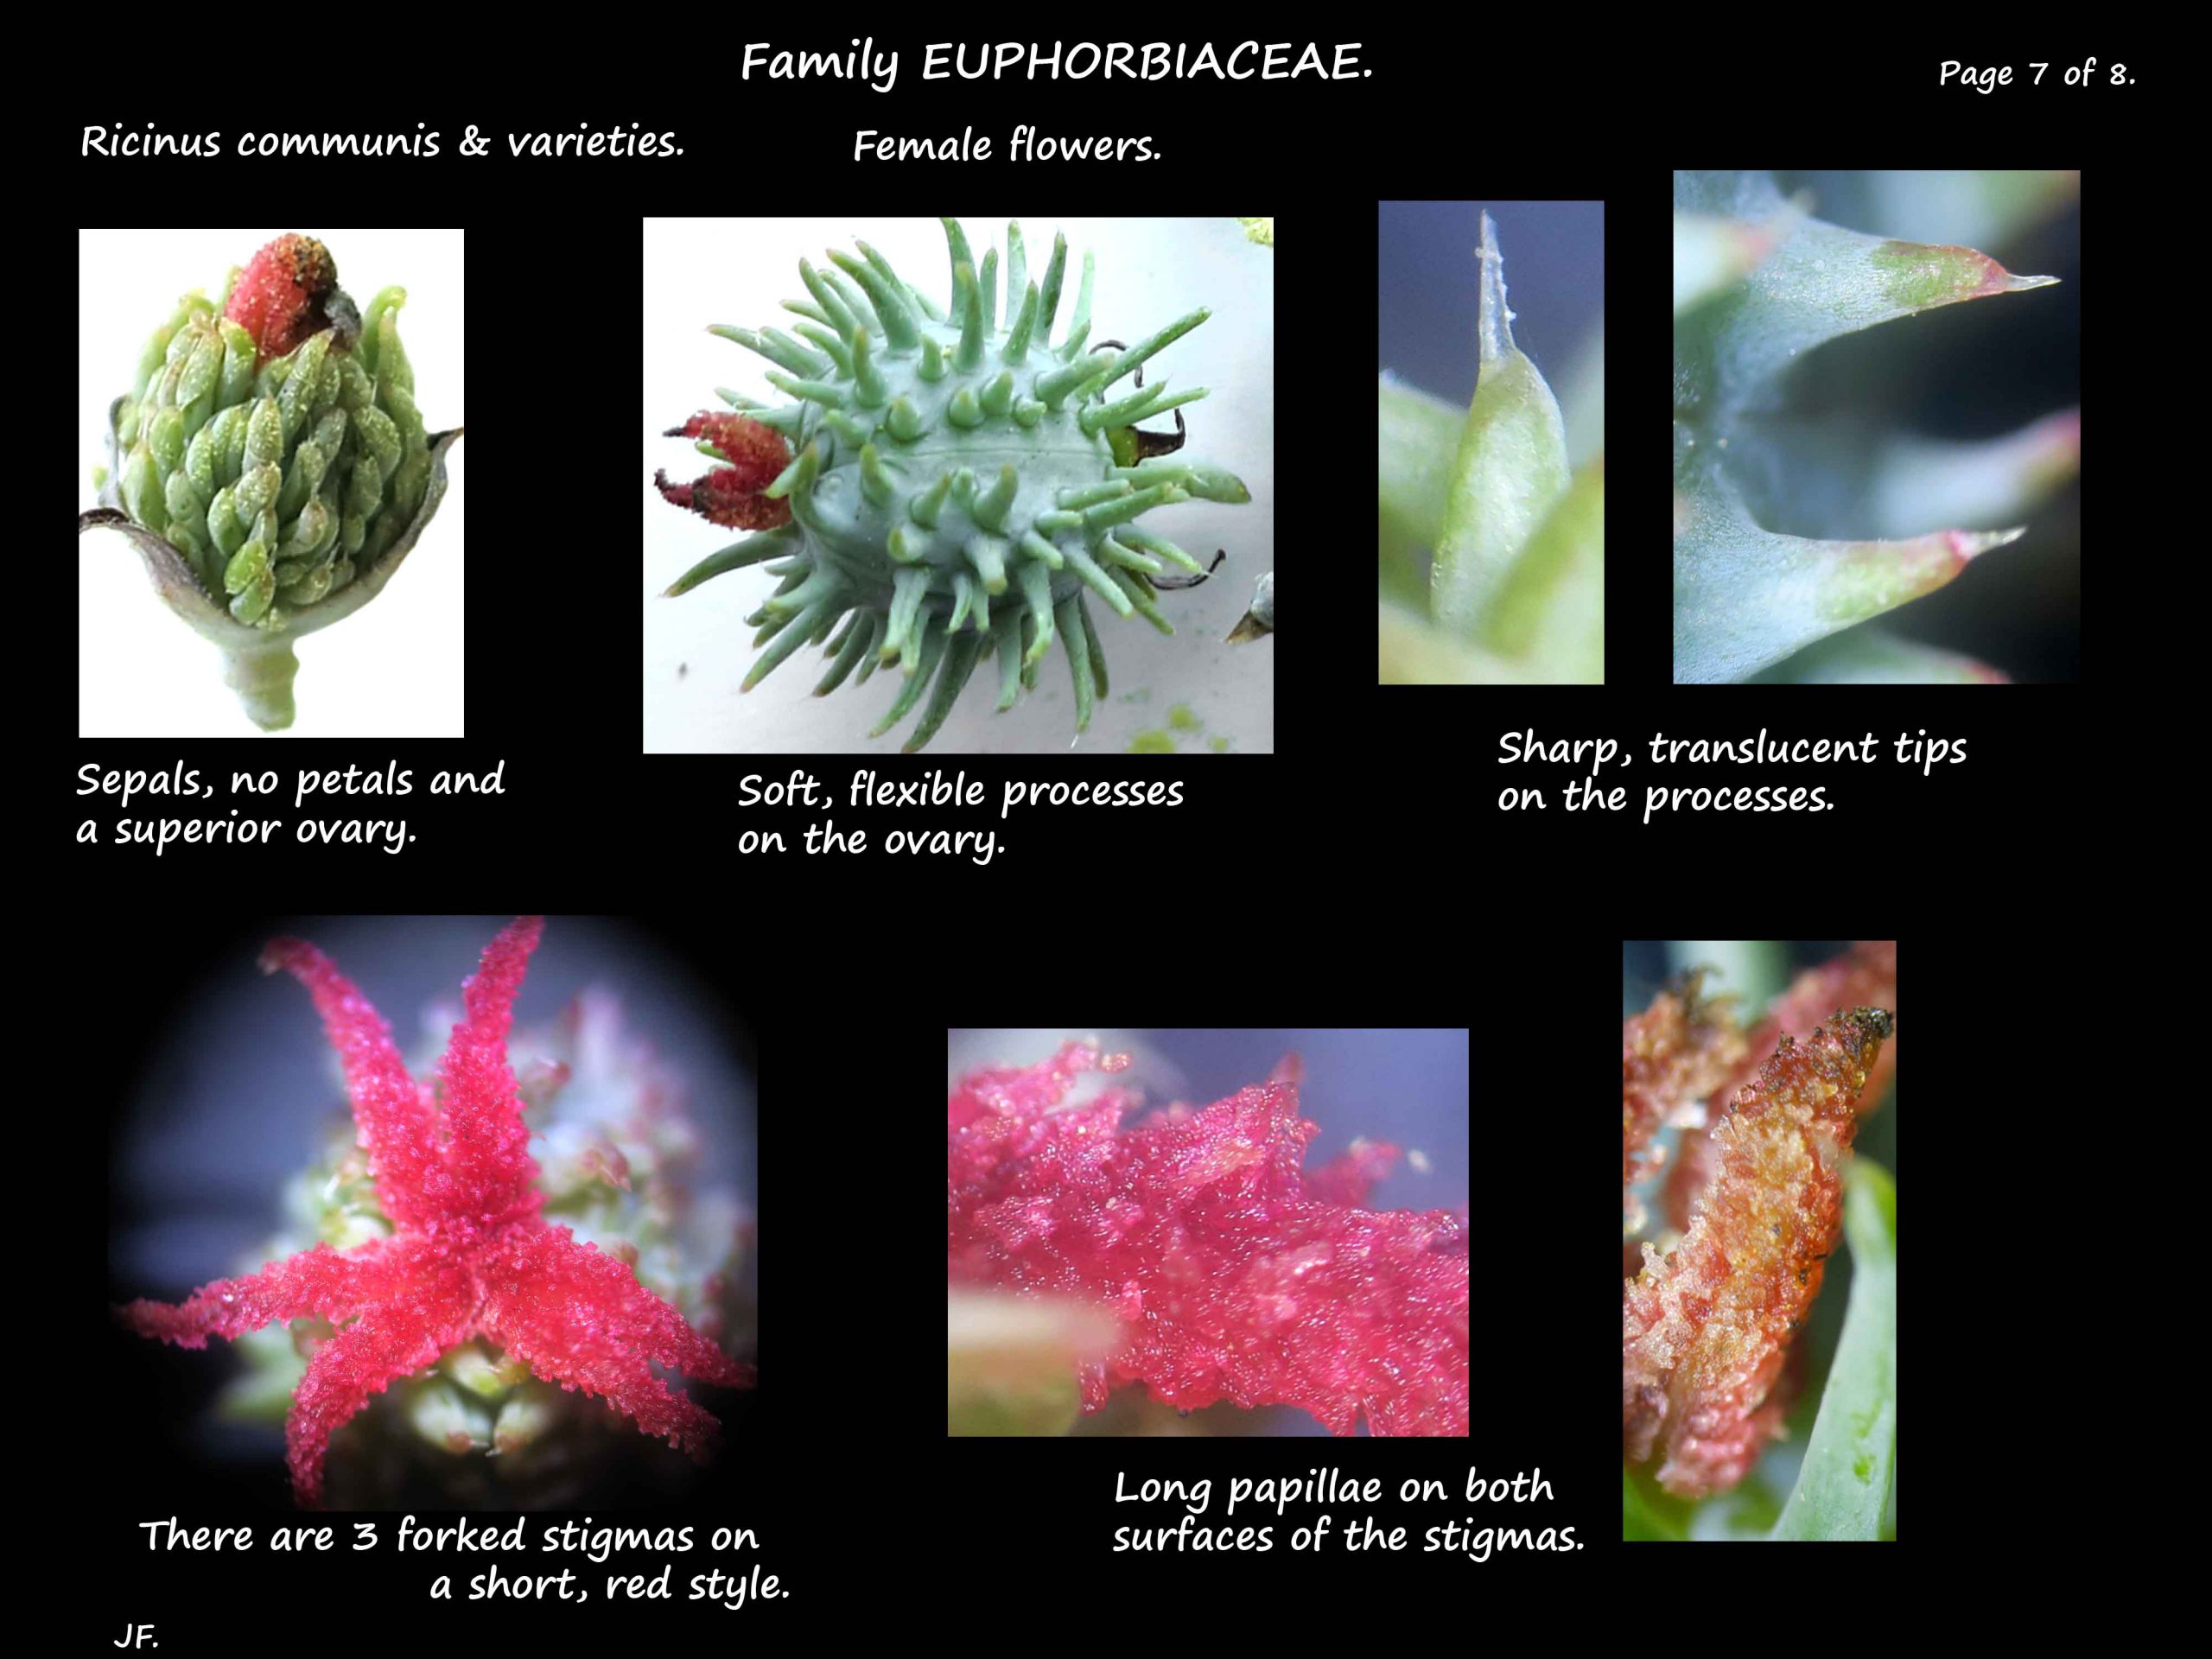 7 Female flowers of Ricinus communis